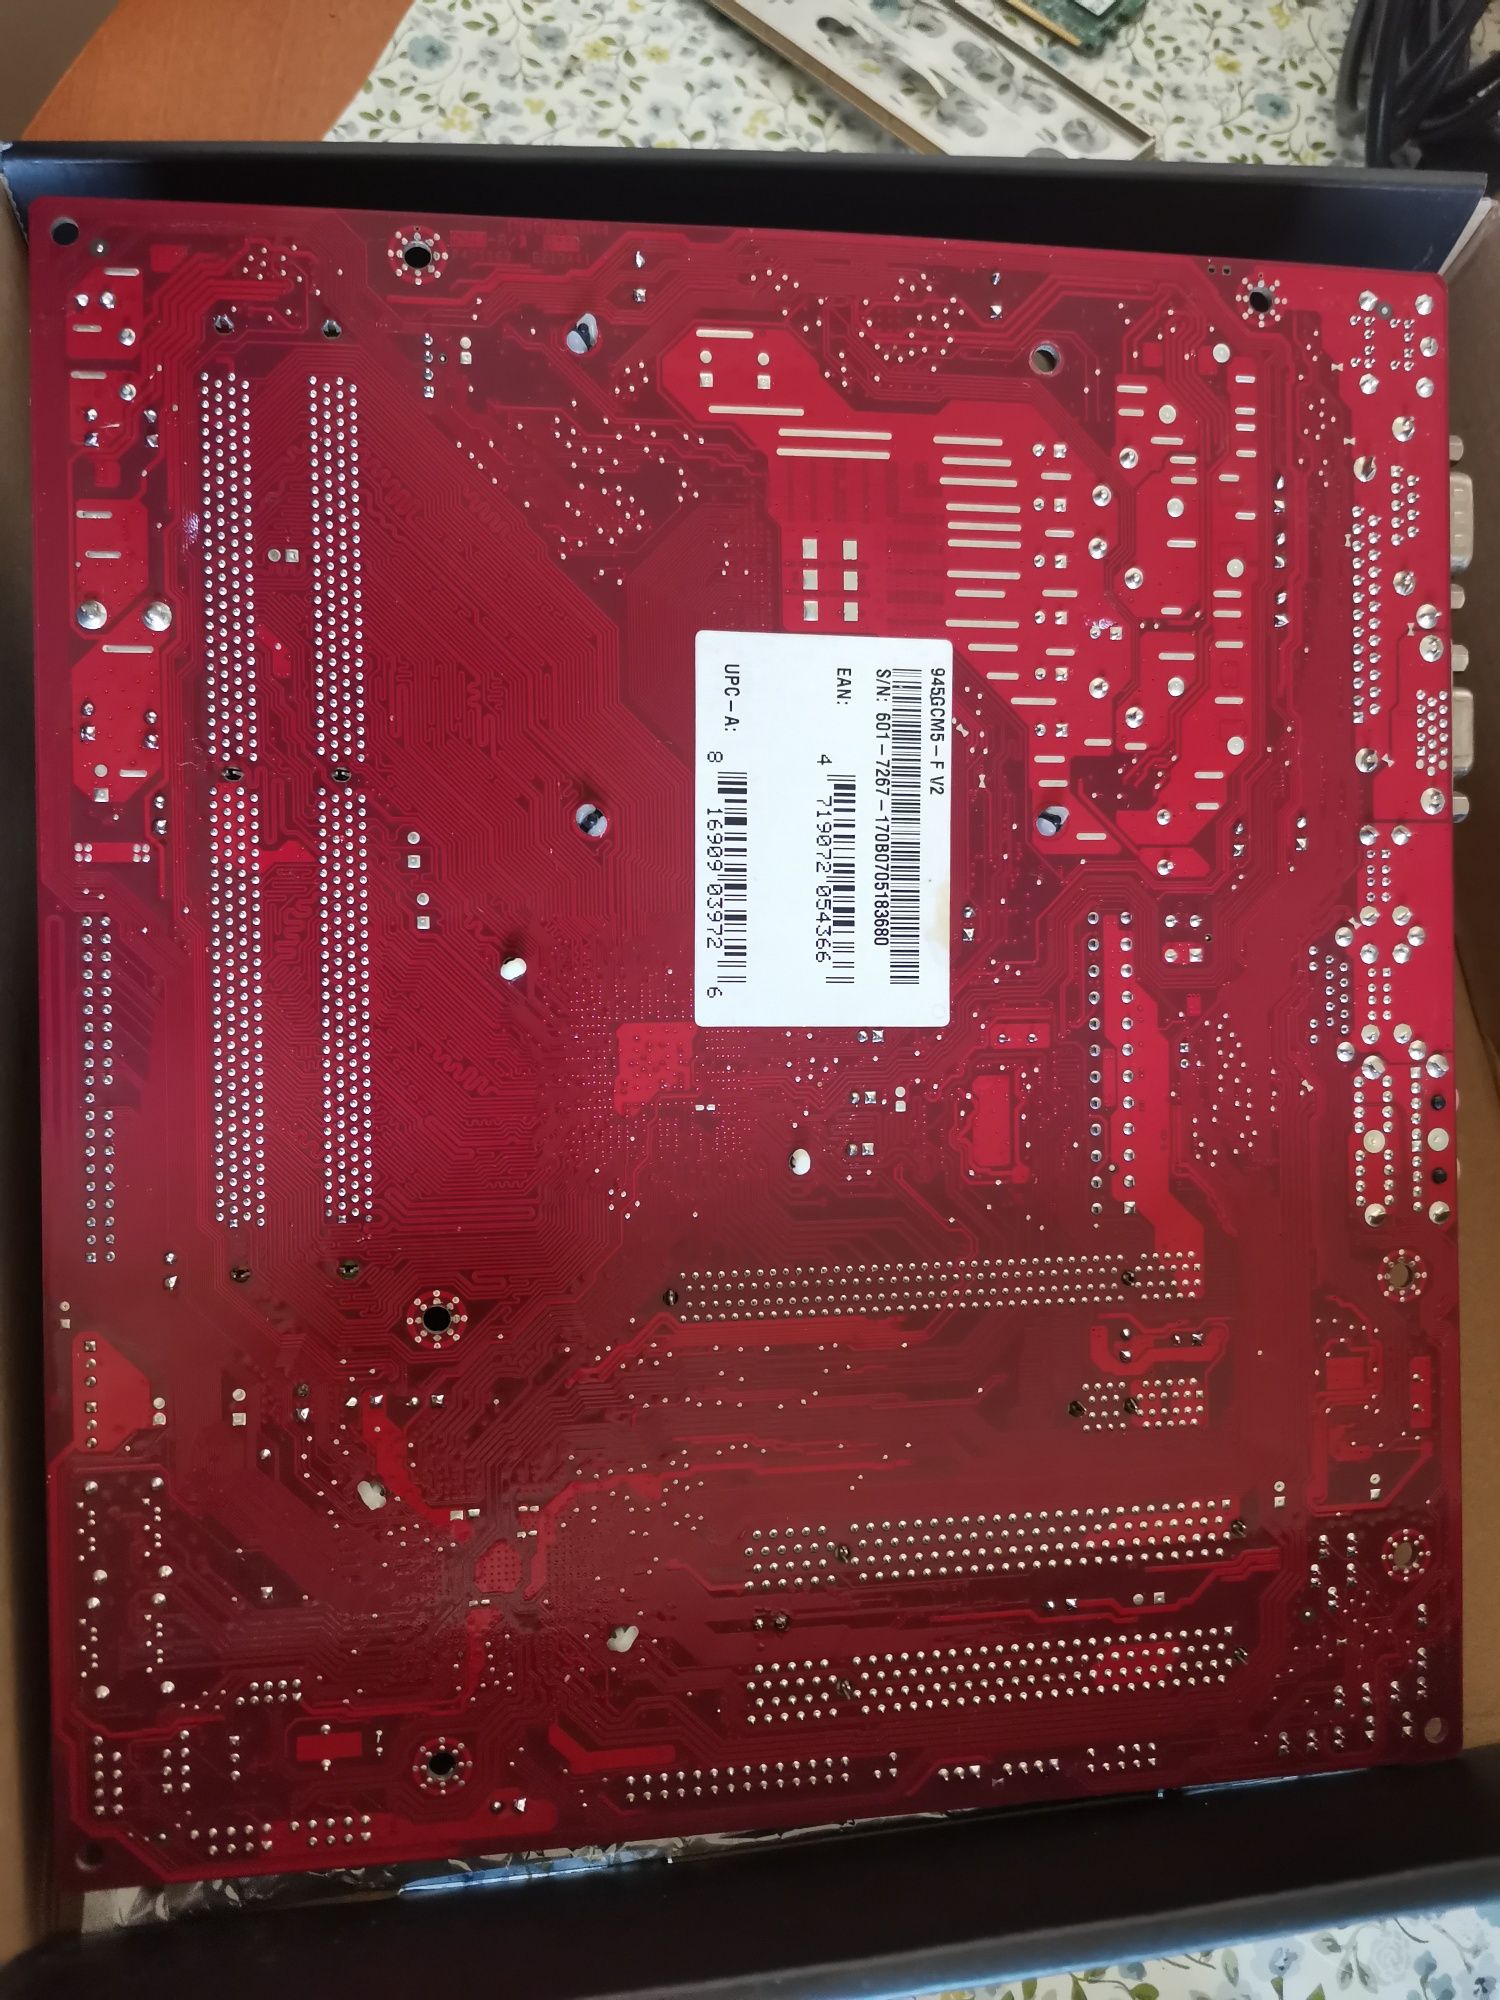 Дънна платка MSI945GCM5-F V 2 в комплект с процесор, охладител и памет